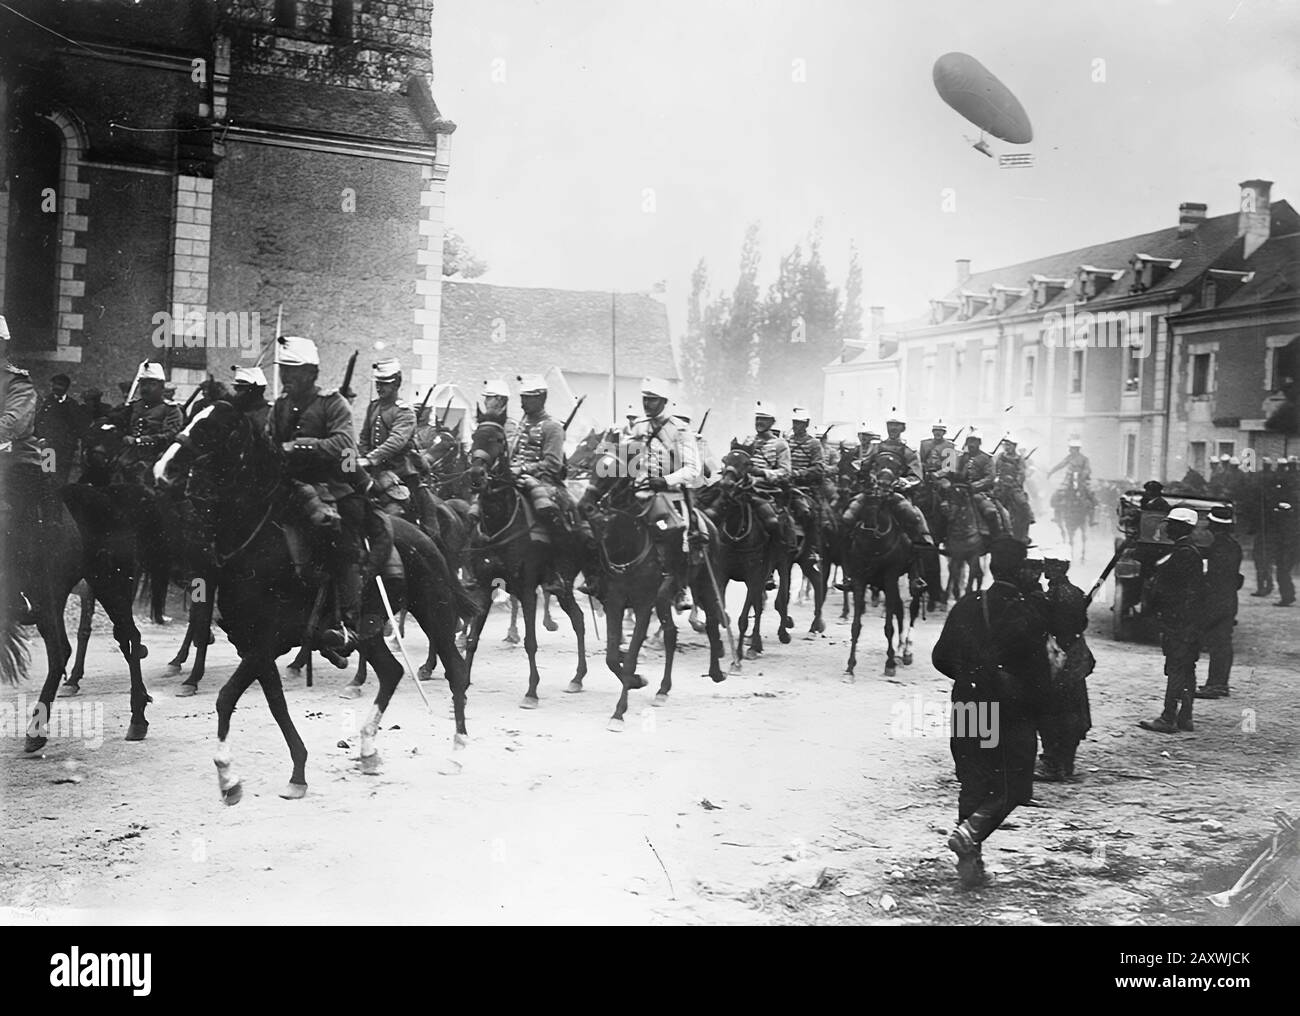 Photographie de la première guerre mondiale prises entre 1914 à 1918 Banque D'Images